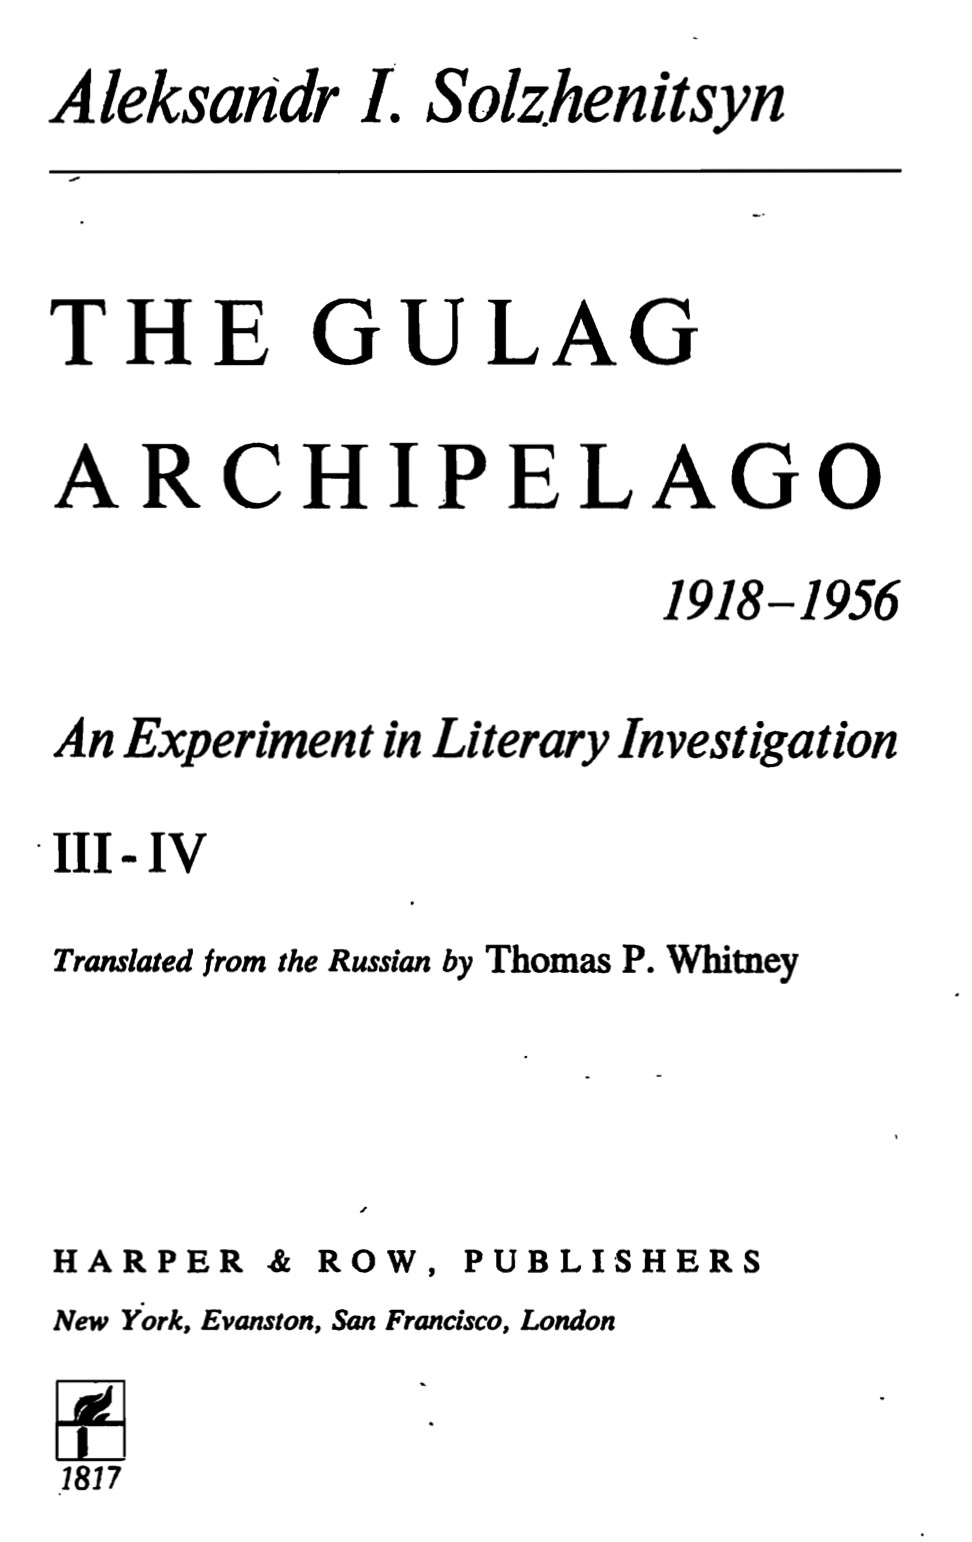 The Gulag Archipelago - 1918-1956 - Volume III-IV (1973) by Aleksandr I. Solzhenitsyn